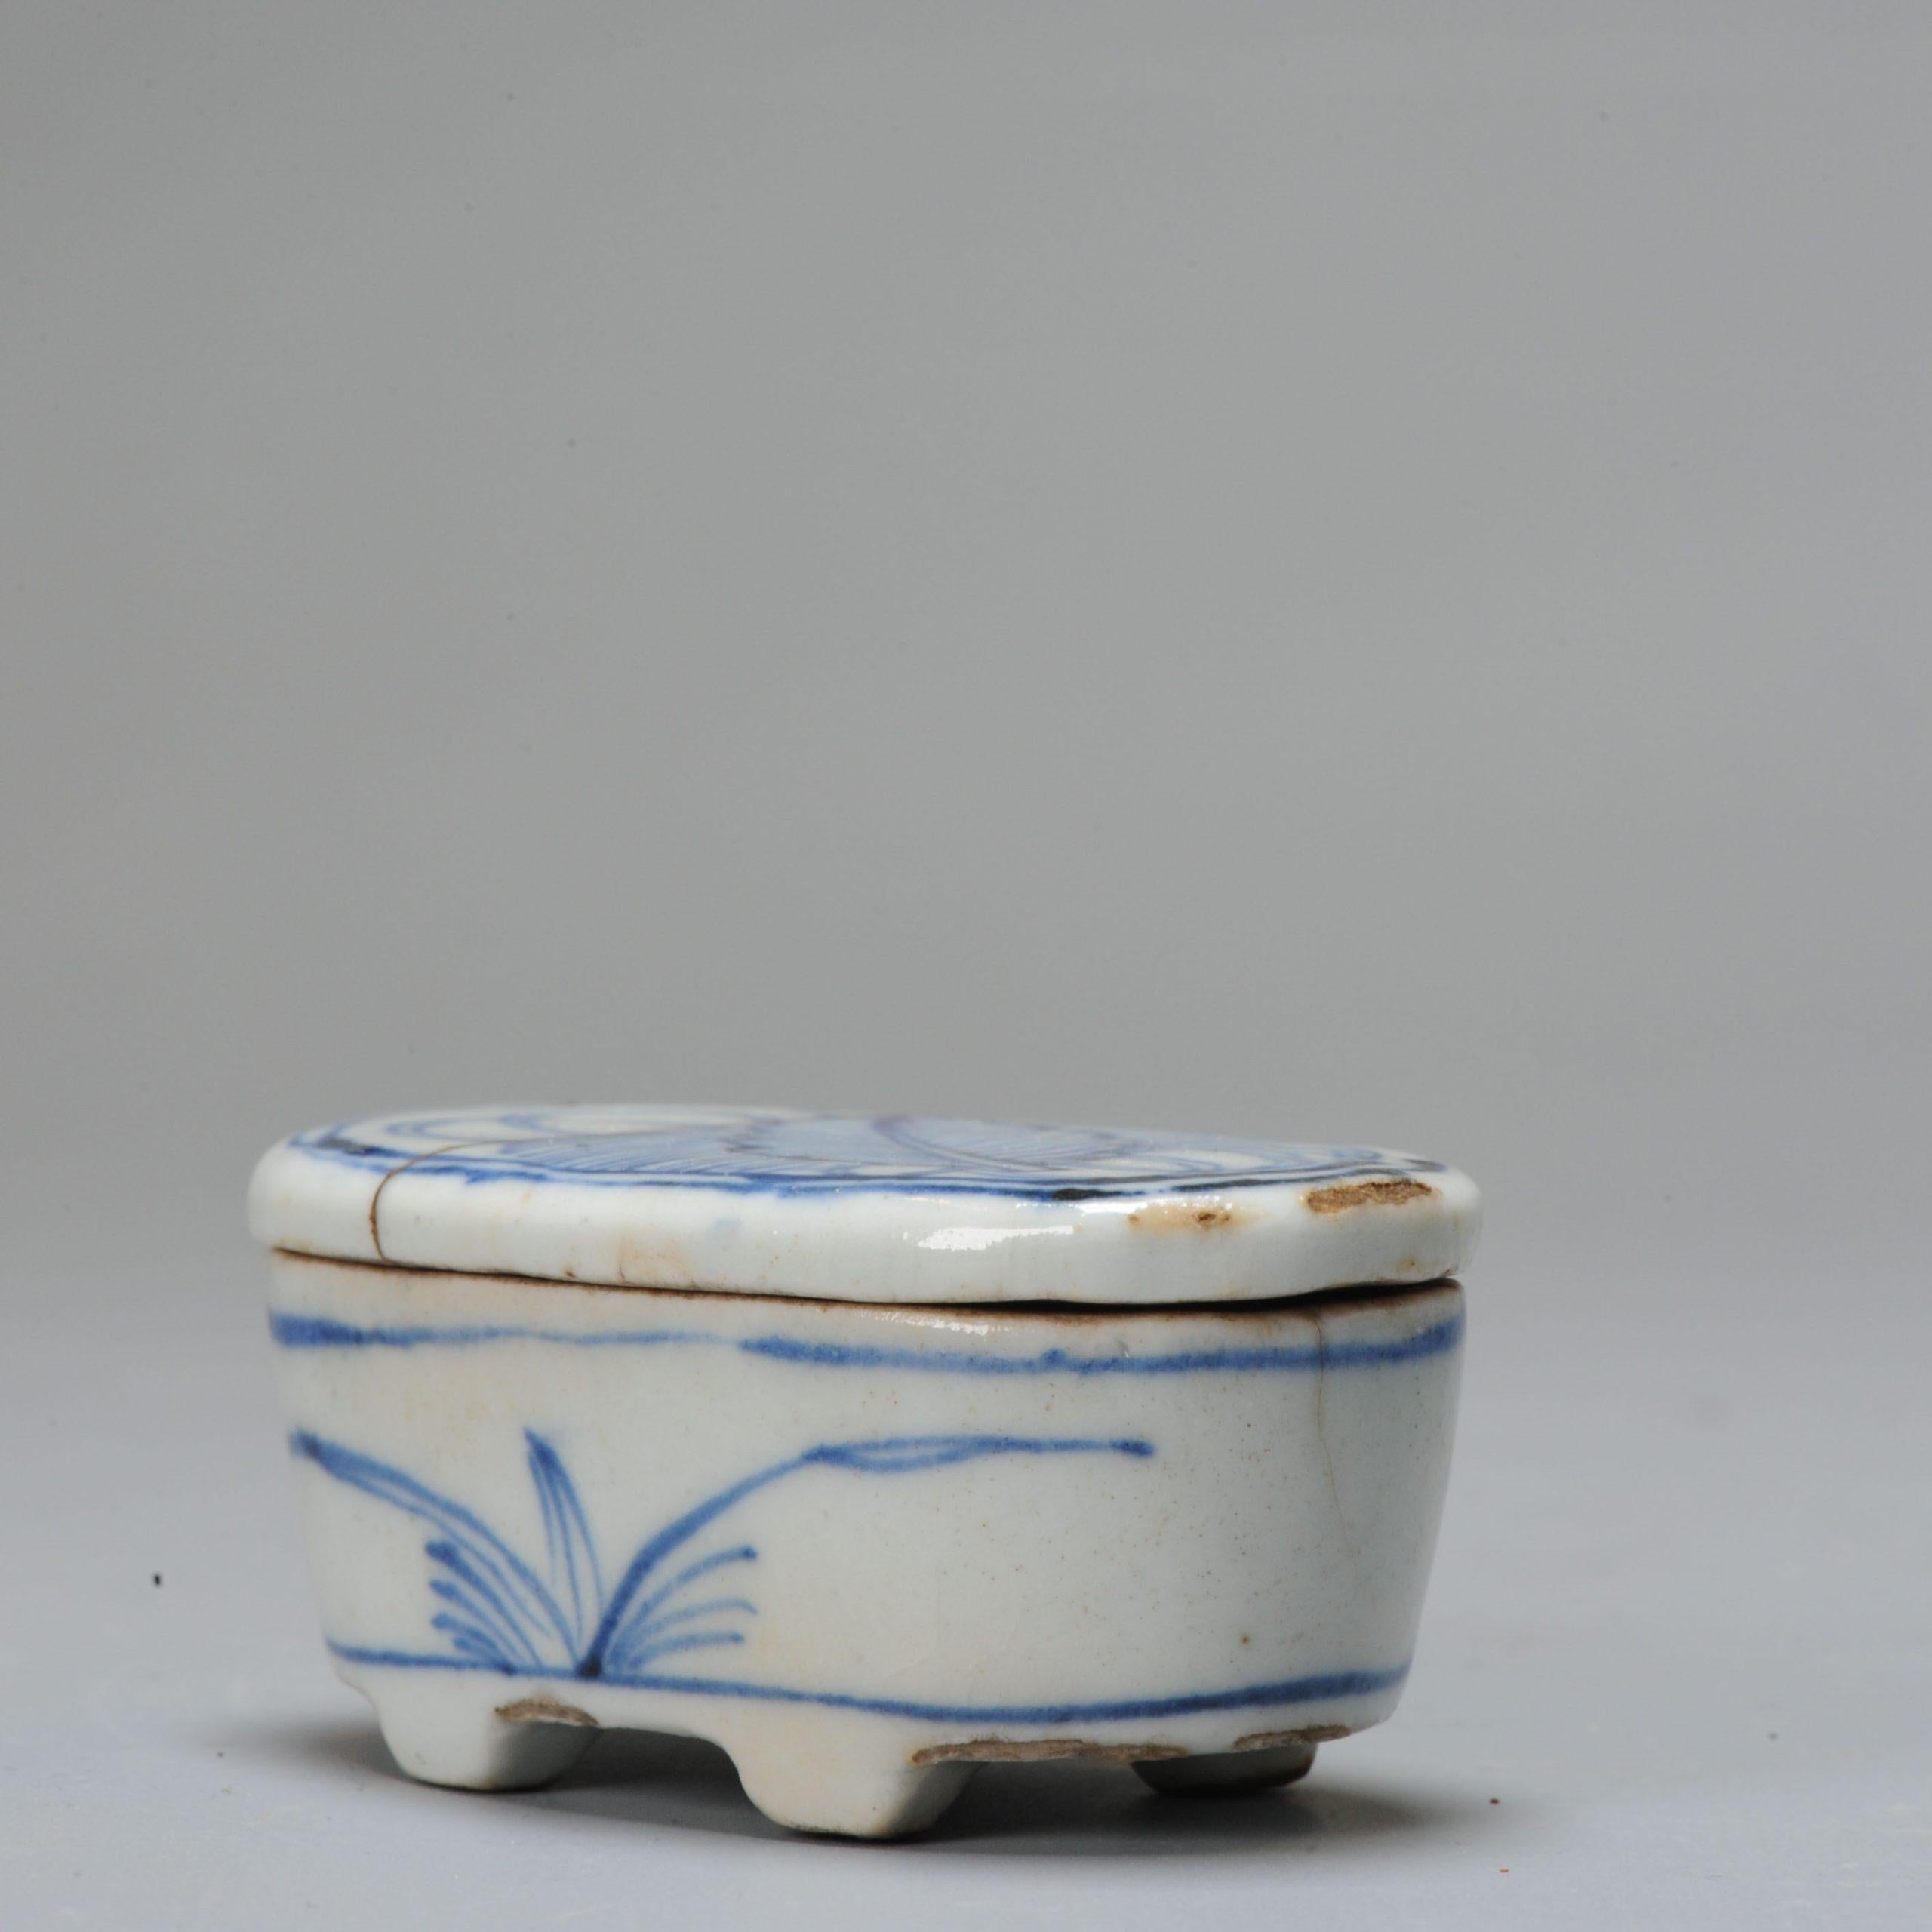 Chinesisches Porzellan aus dem 17. Jahrhundert, Übergangszeit, hergestellt für den japanischen Markt. In diesem ungewöhnlichen Kosumetsuke Kogo wurde Weihrauch aufbewahrt, der während des Legevorgangs in das Holzkohlefeuer gegeben wird. Dieses